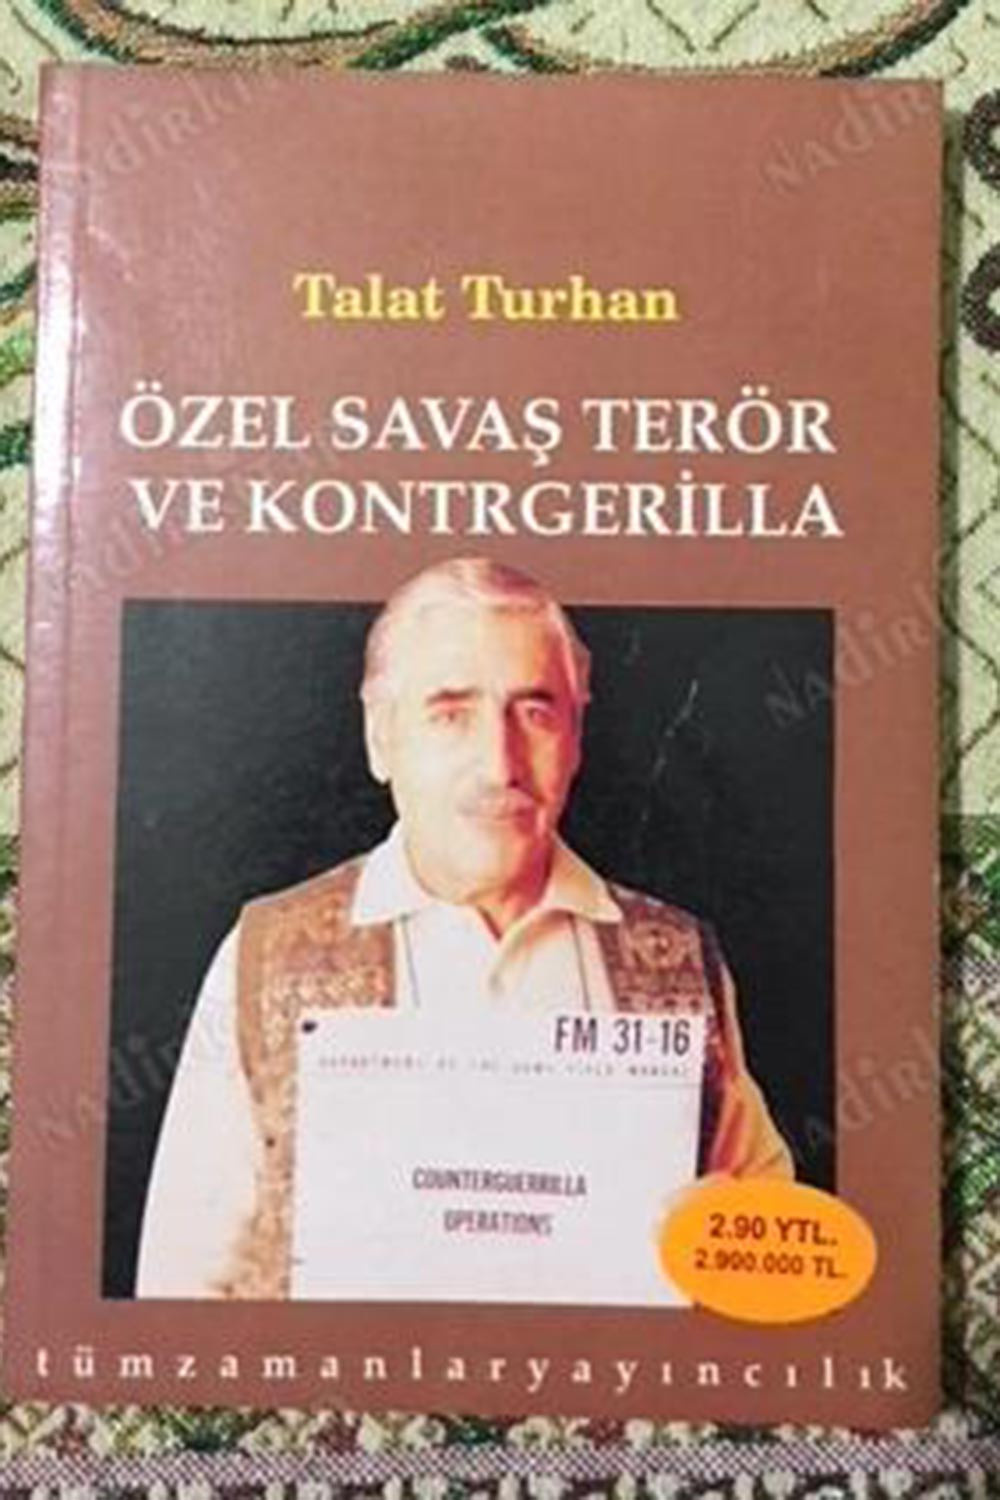 Talat Turhan kimdir